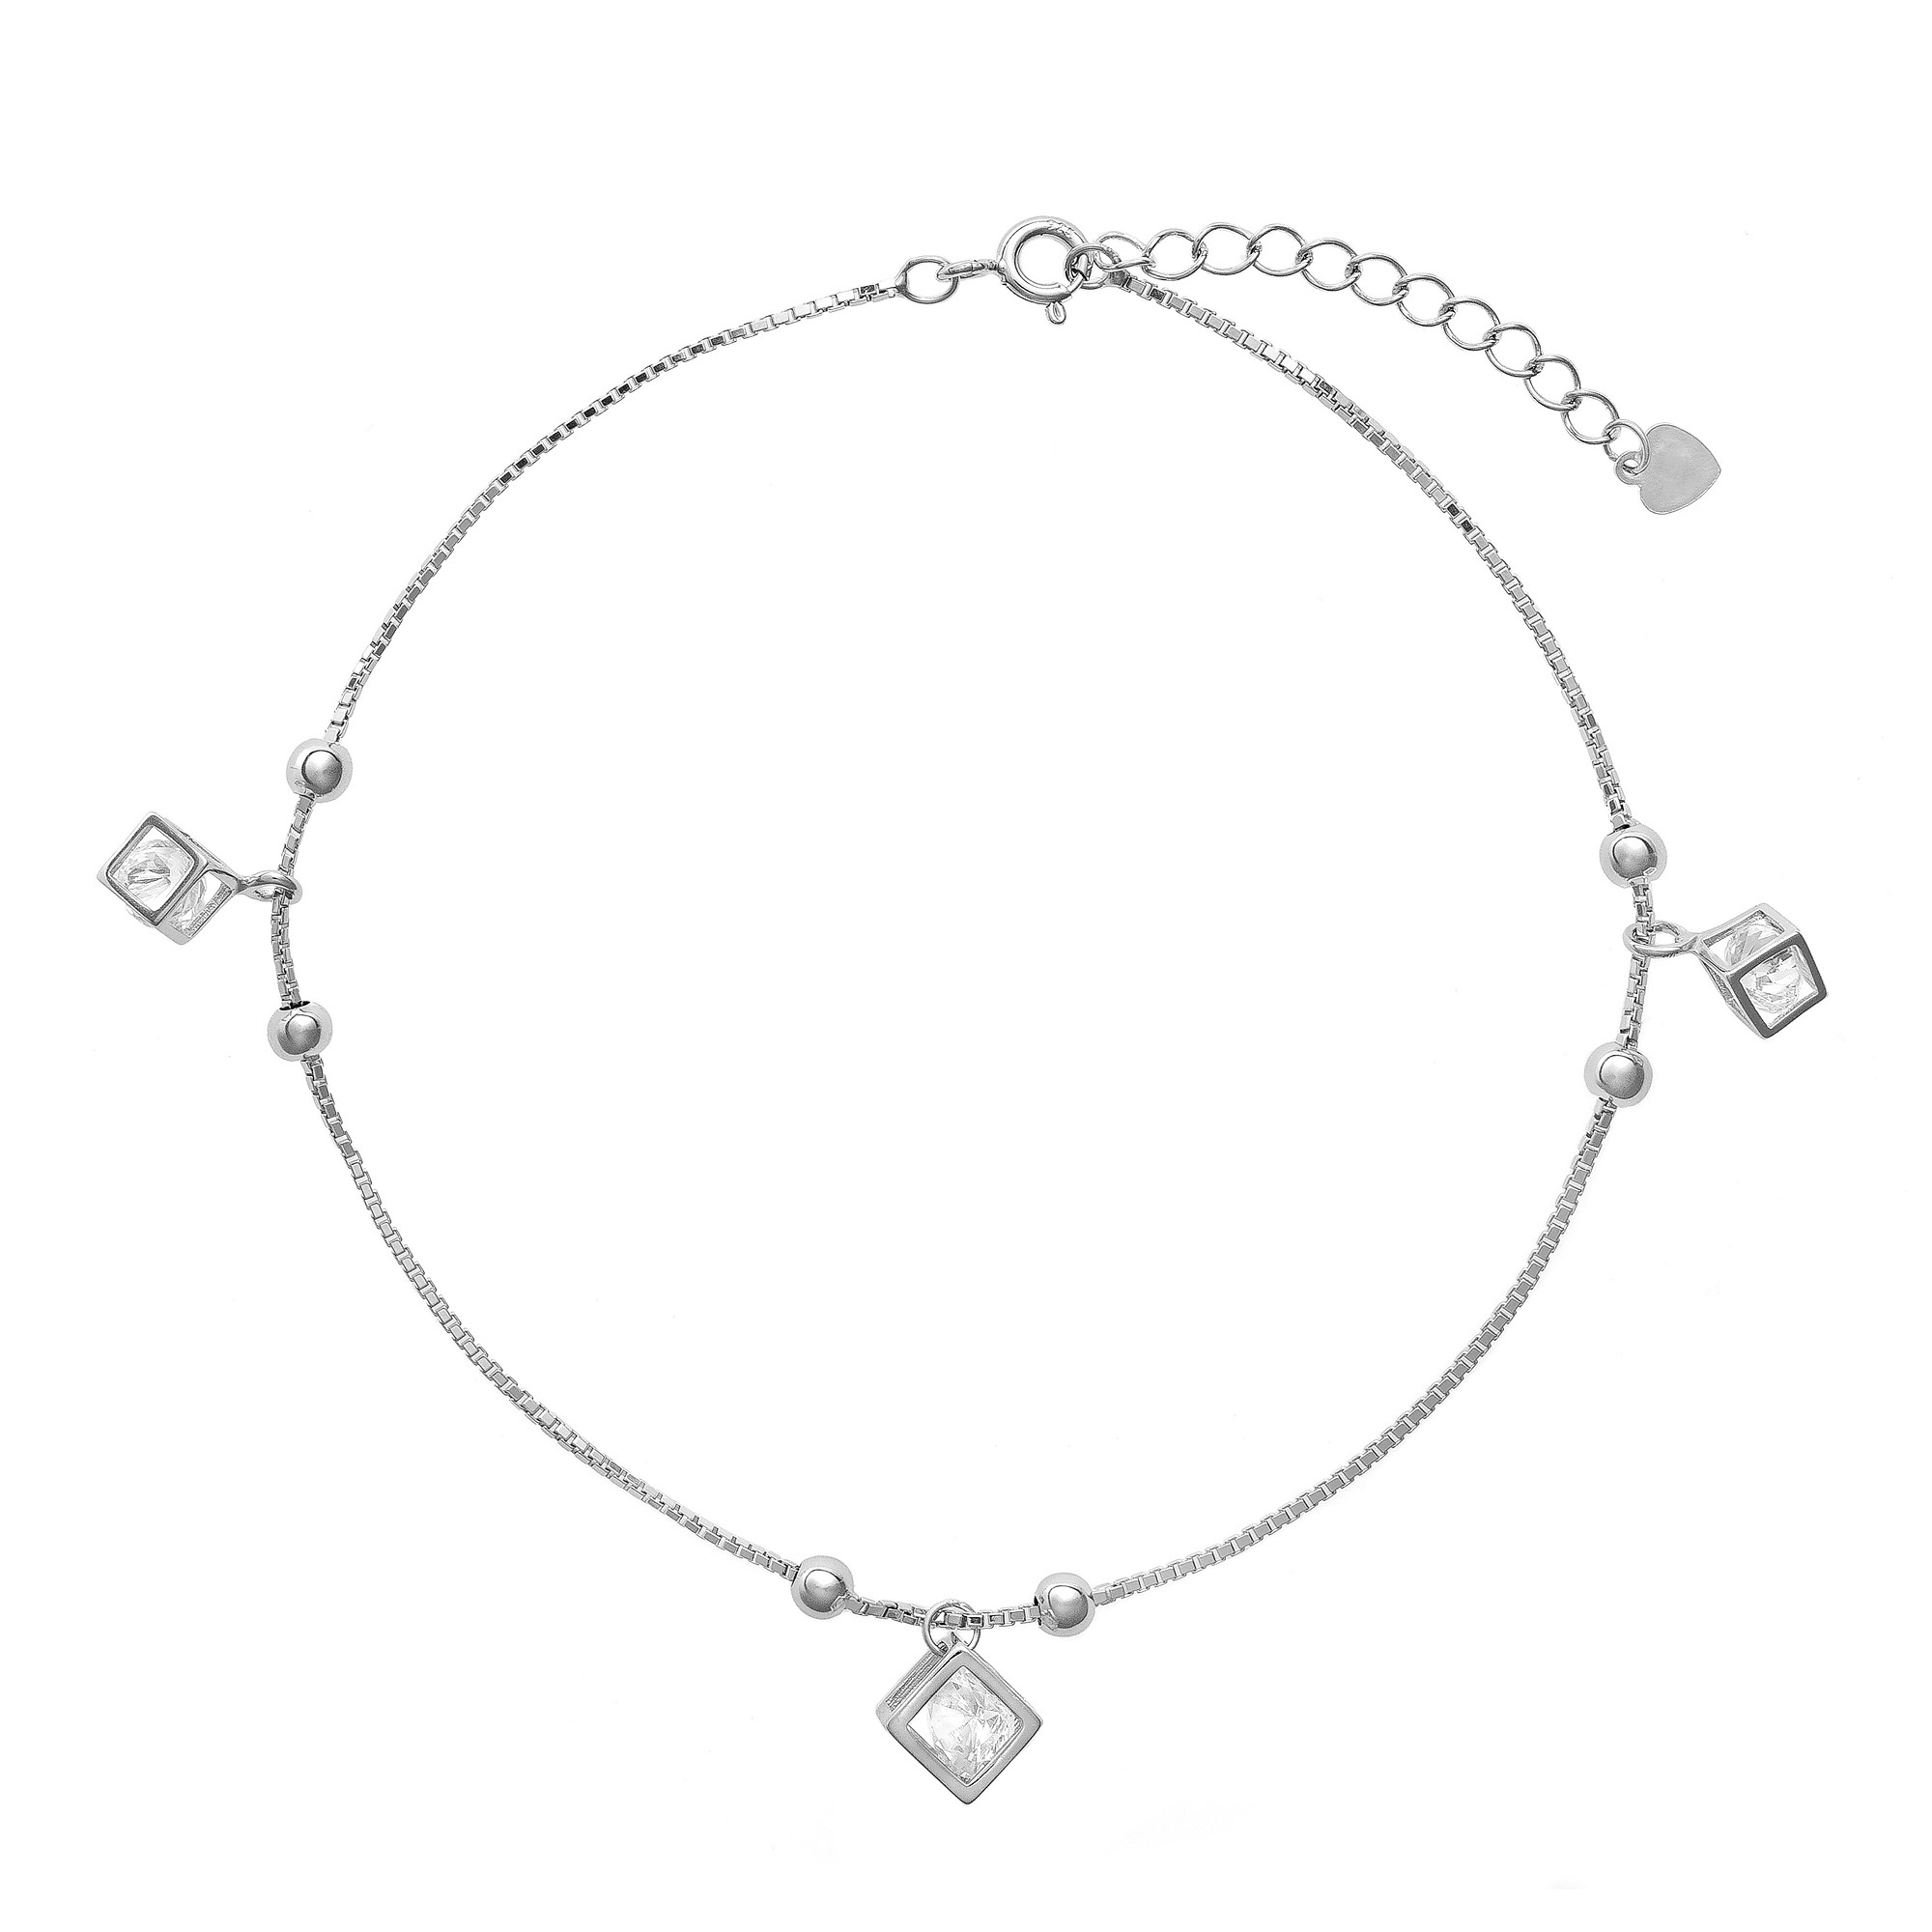 AGAIN Jewelry Třpytivý stříbrný náramek na kotník s kubickými zirkony AJNH0003